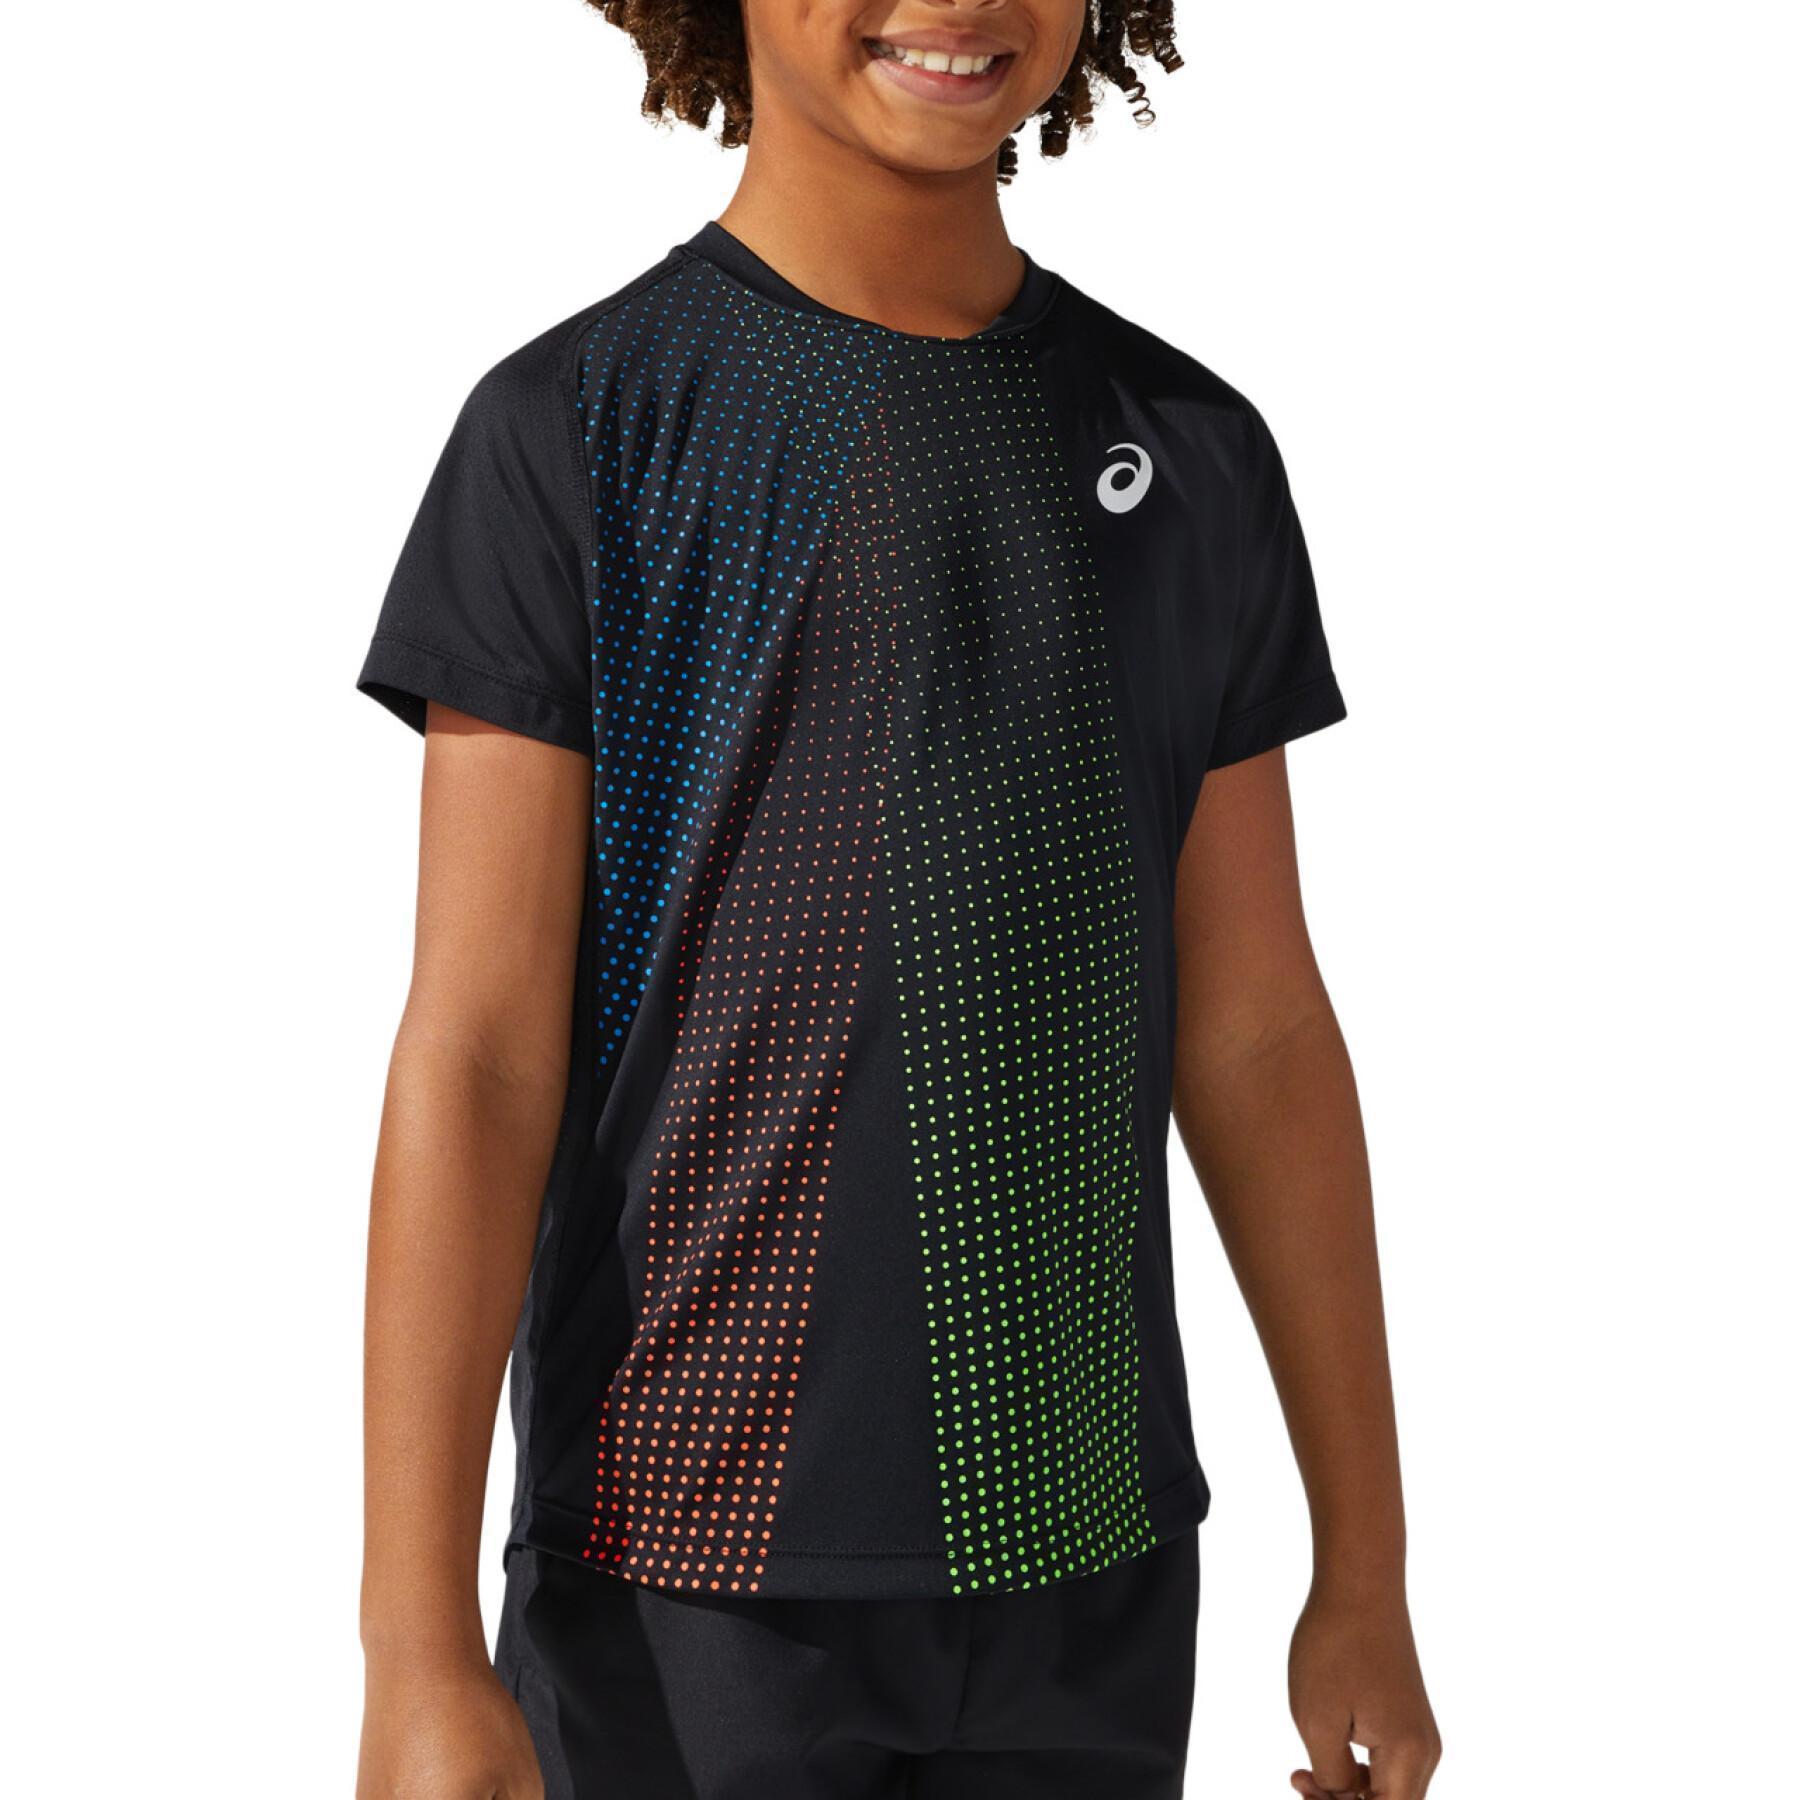 T-shirt sem mangas criança Asics Boys Tennis Graphic